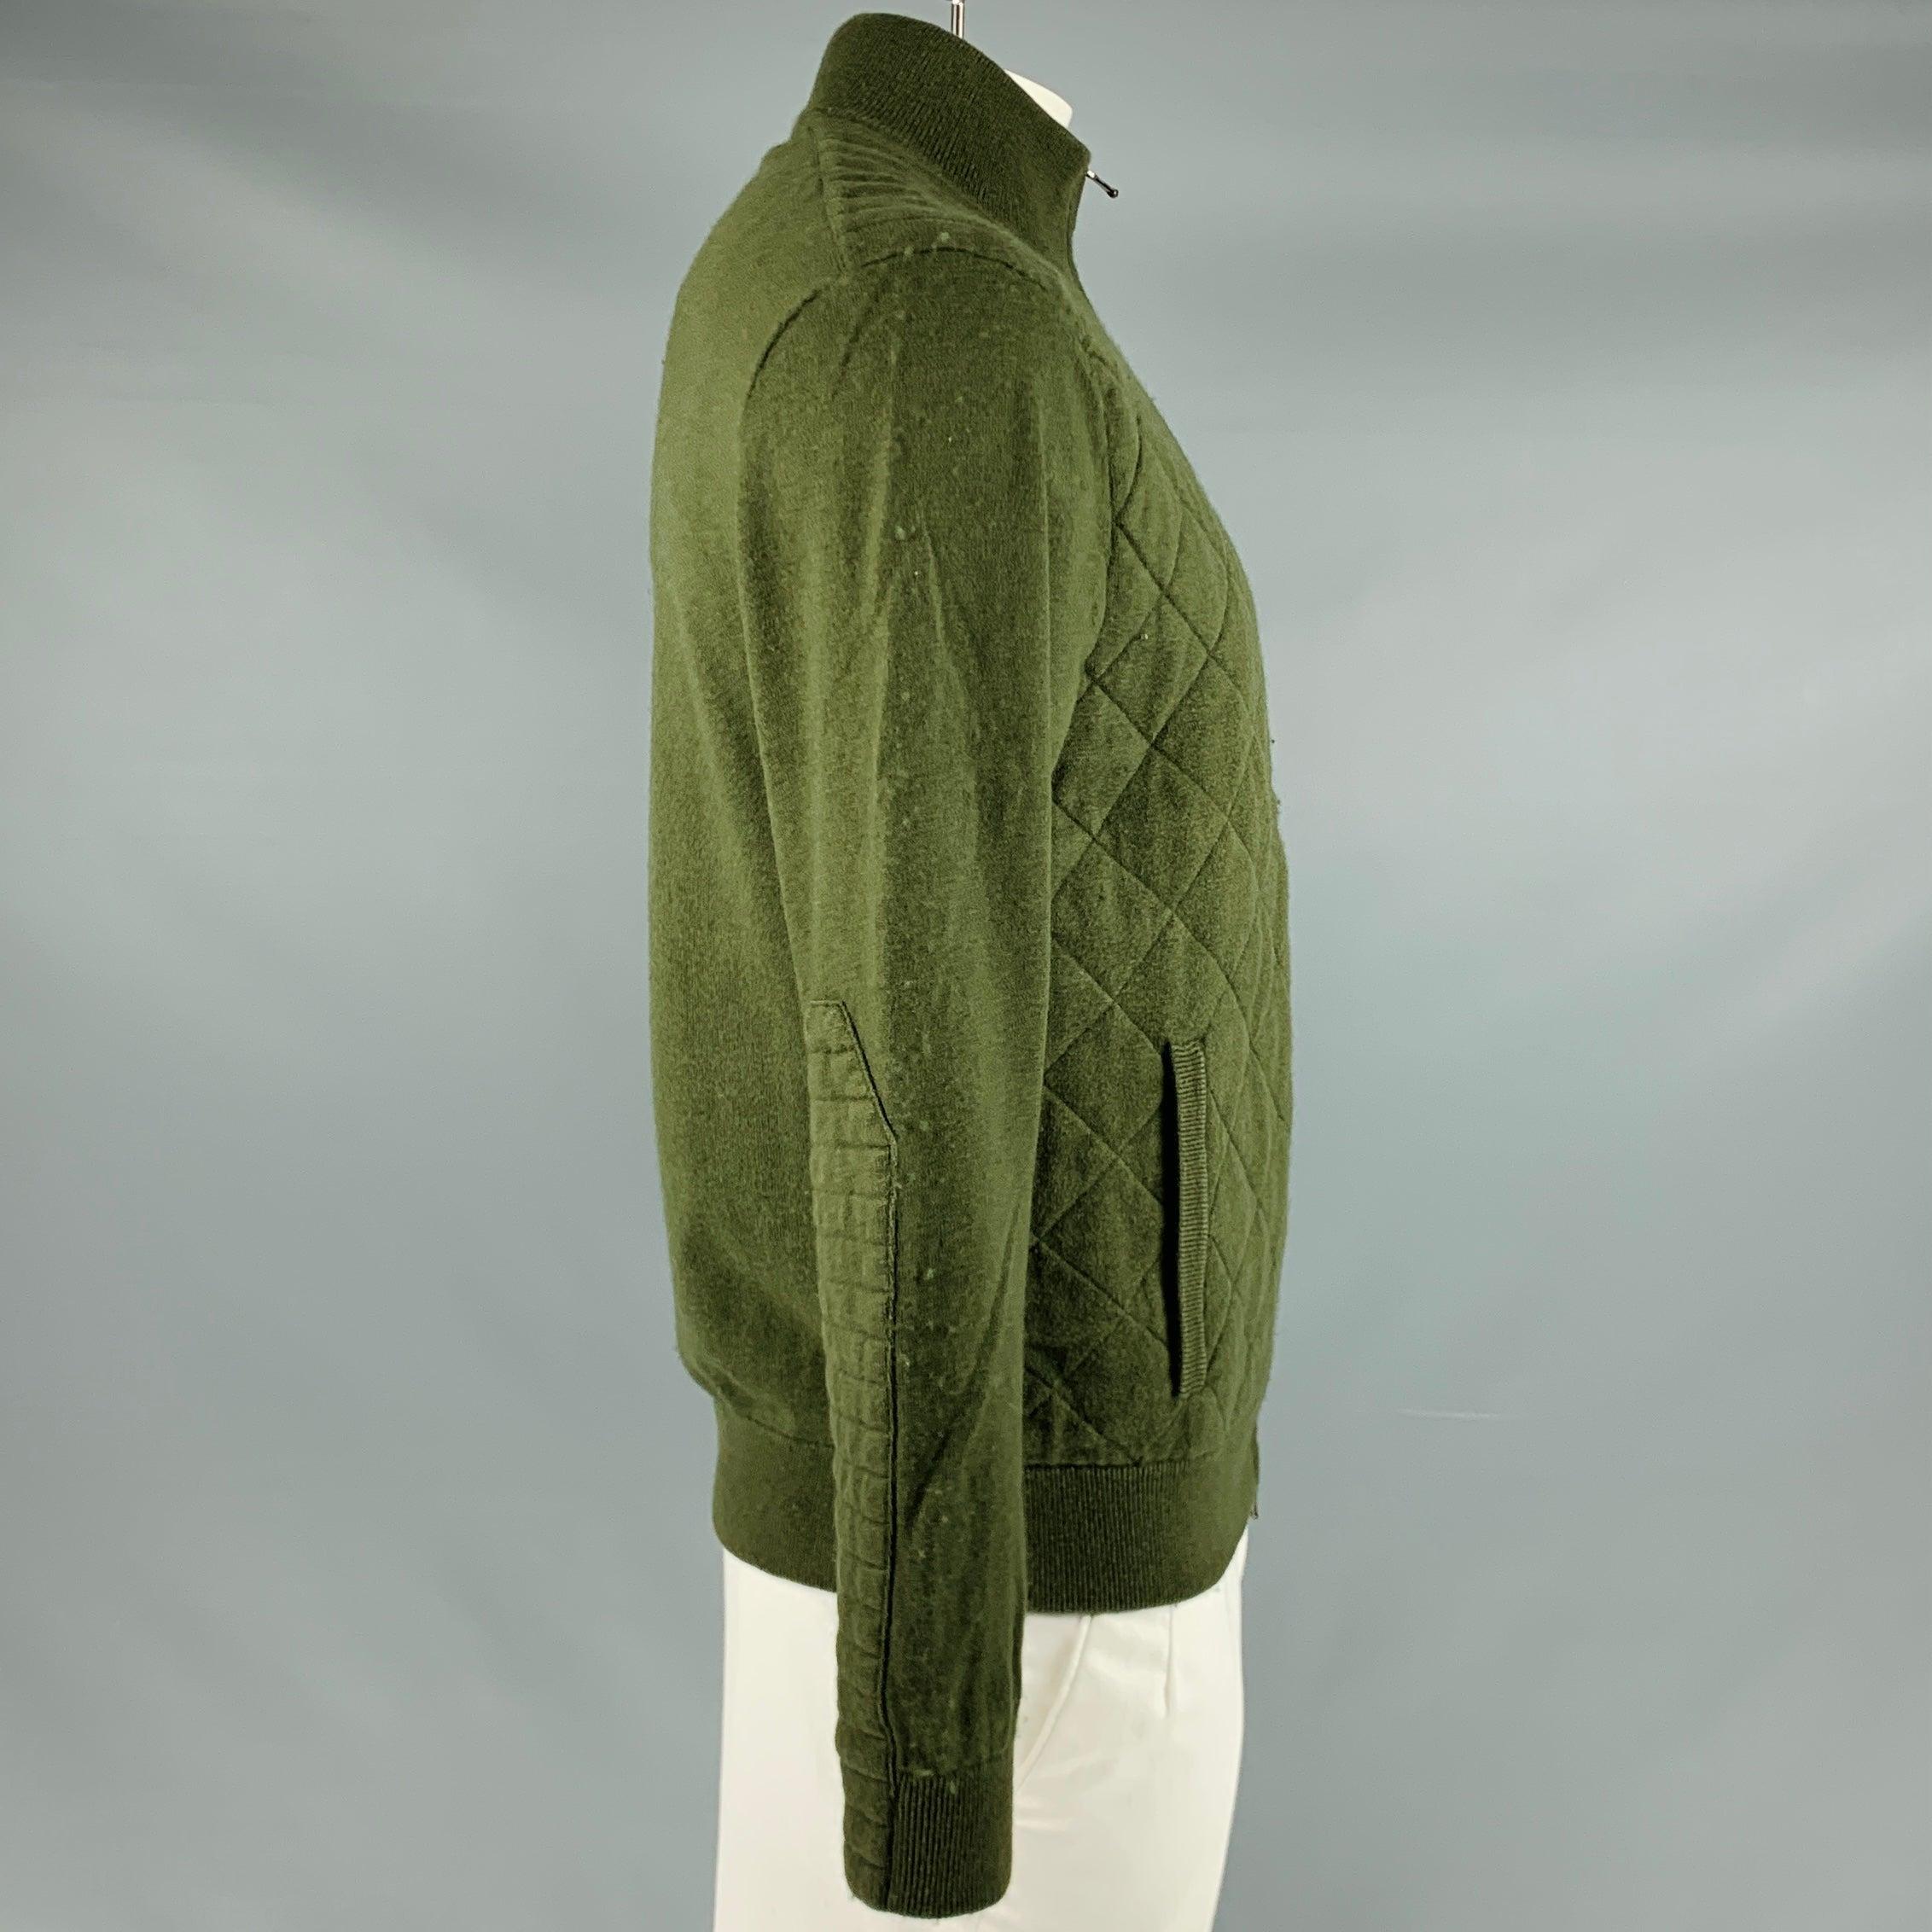 RRL by RALPH LAUREN veste
en tricot de coton mélangé gris olive, avec un style matelassé, deux poches et une fermeture à glissière.Bon état d'occasion.
Boulochage modéré sur l'ensemble de la pièce. 

Marqué :   L 

Mesures : 
 
Épaule : 19.5 pouces